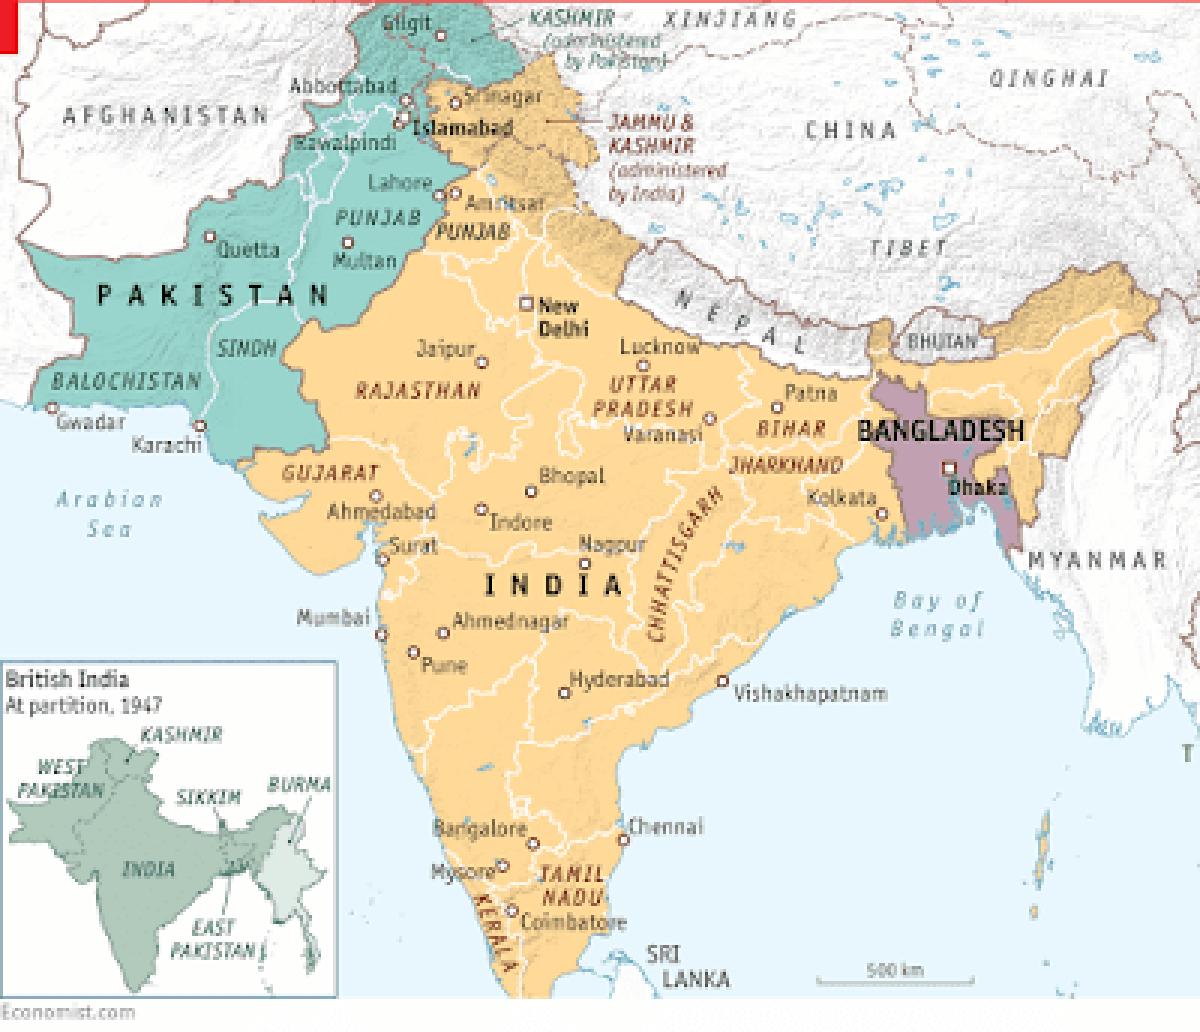 Pakistán y la India, condenadas a entenderse